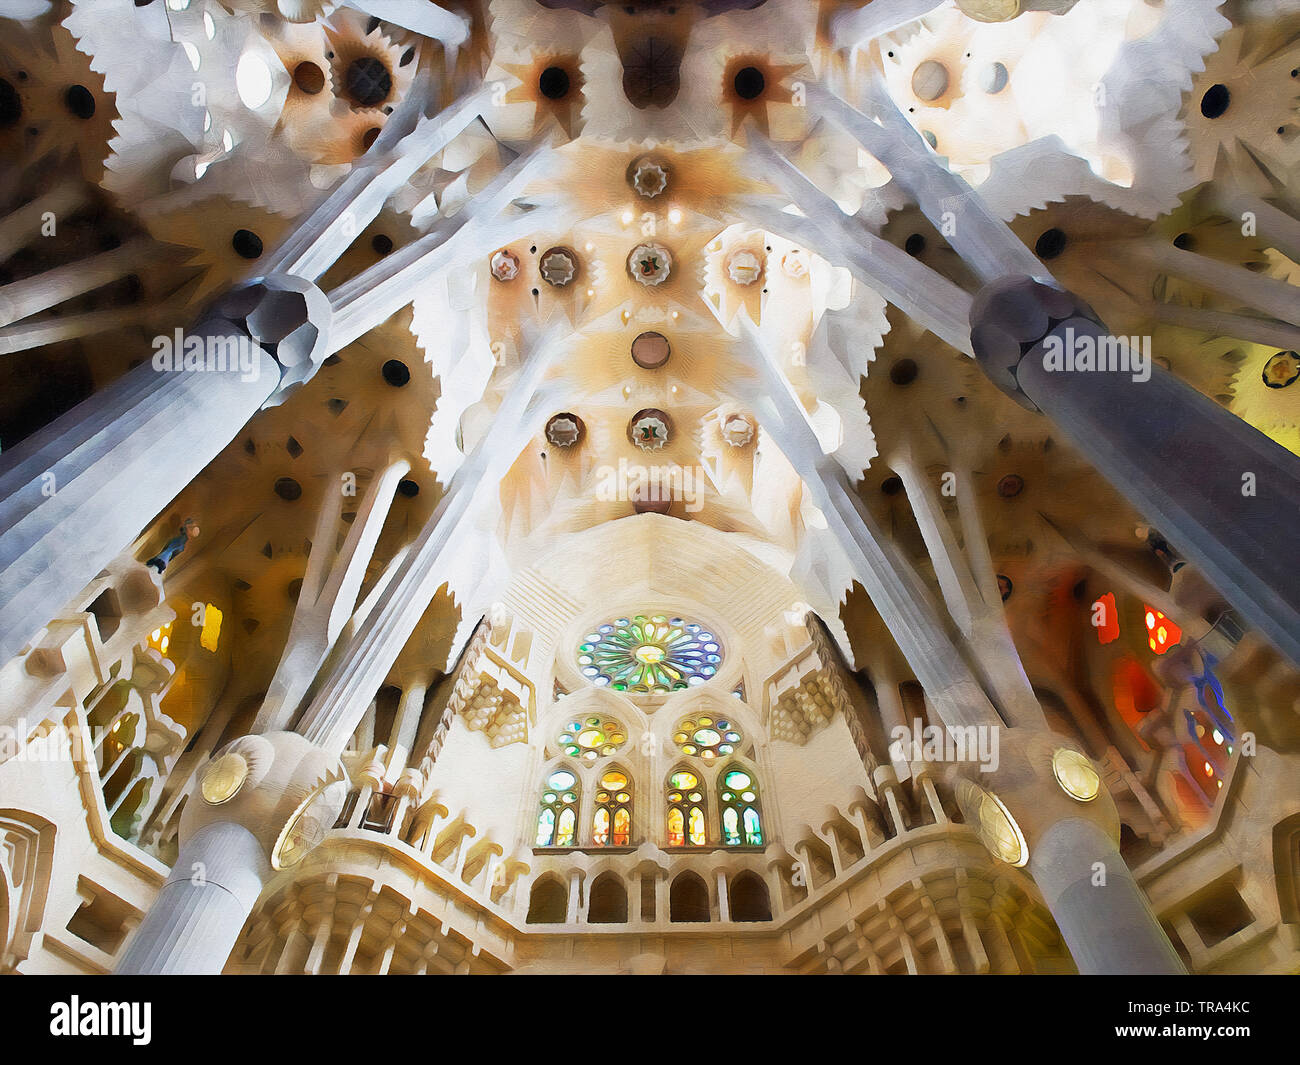 La Sagrada Familia de Barcelona. Una gran basílica católica obra maestra del arquitecto Antoni Gaudí, el máximo exponente del modernismo catalán. Foto de stock